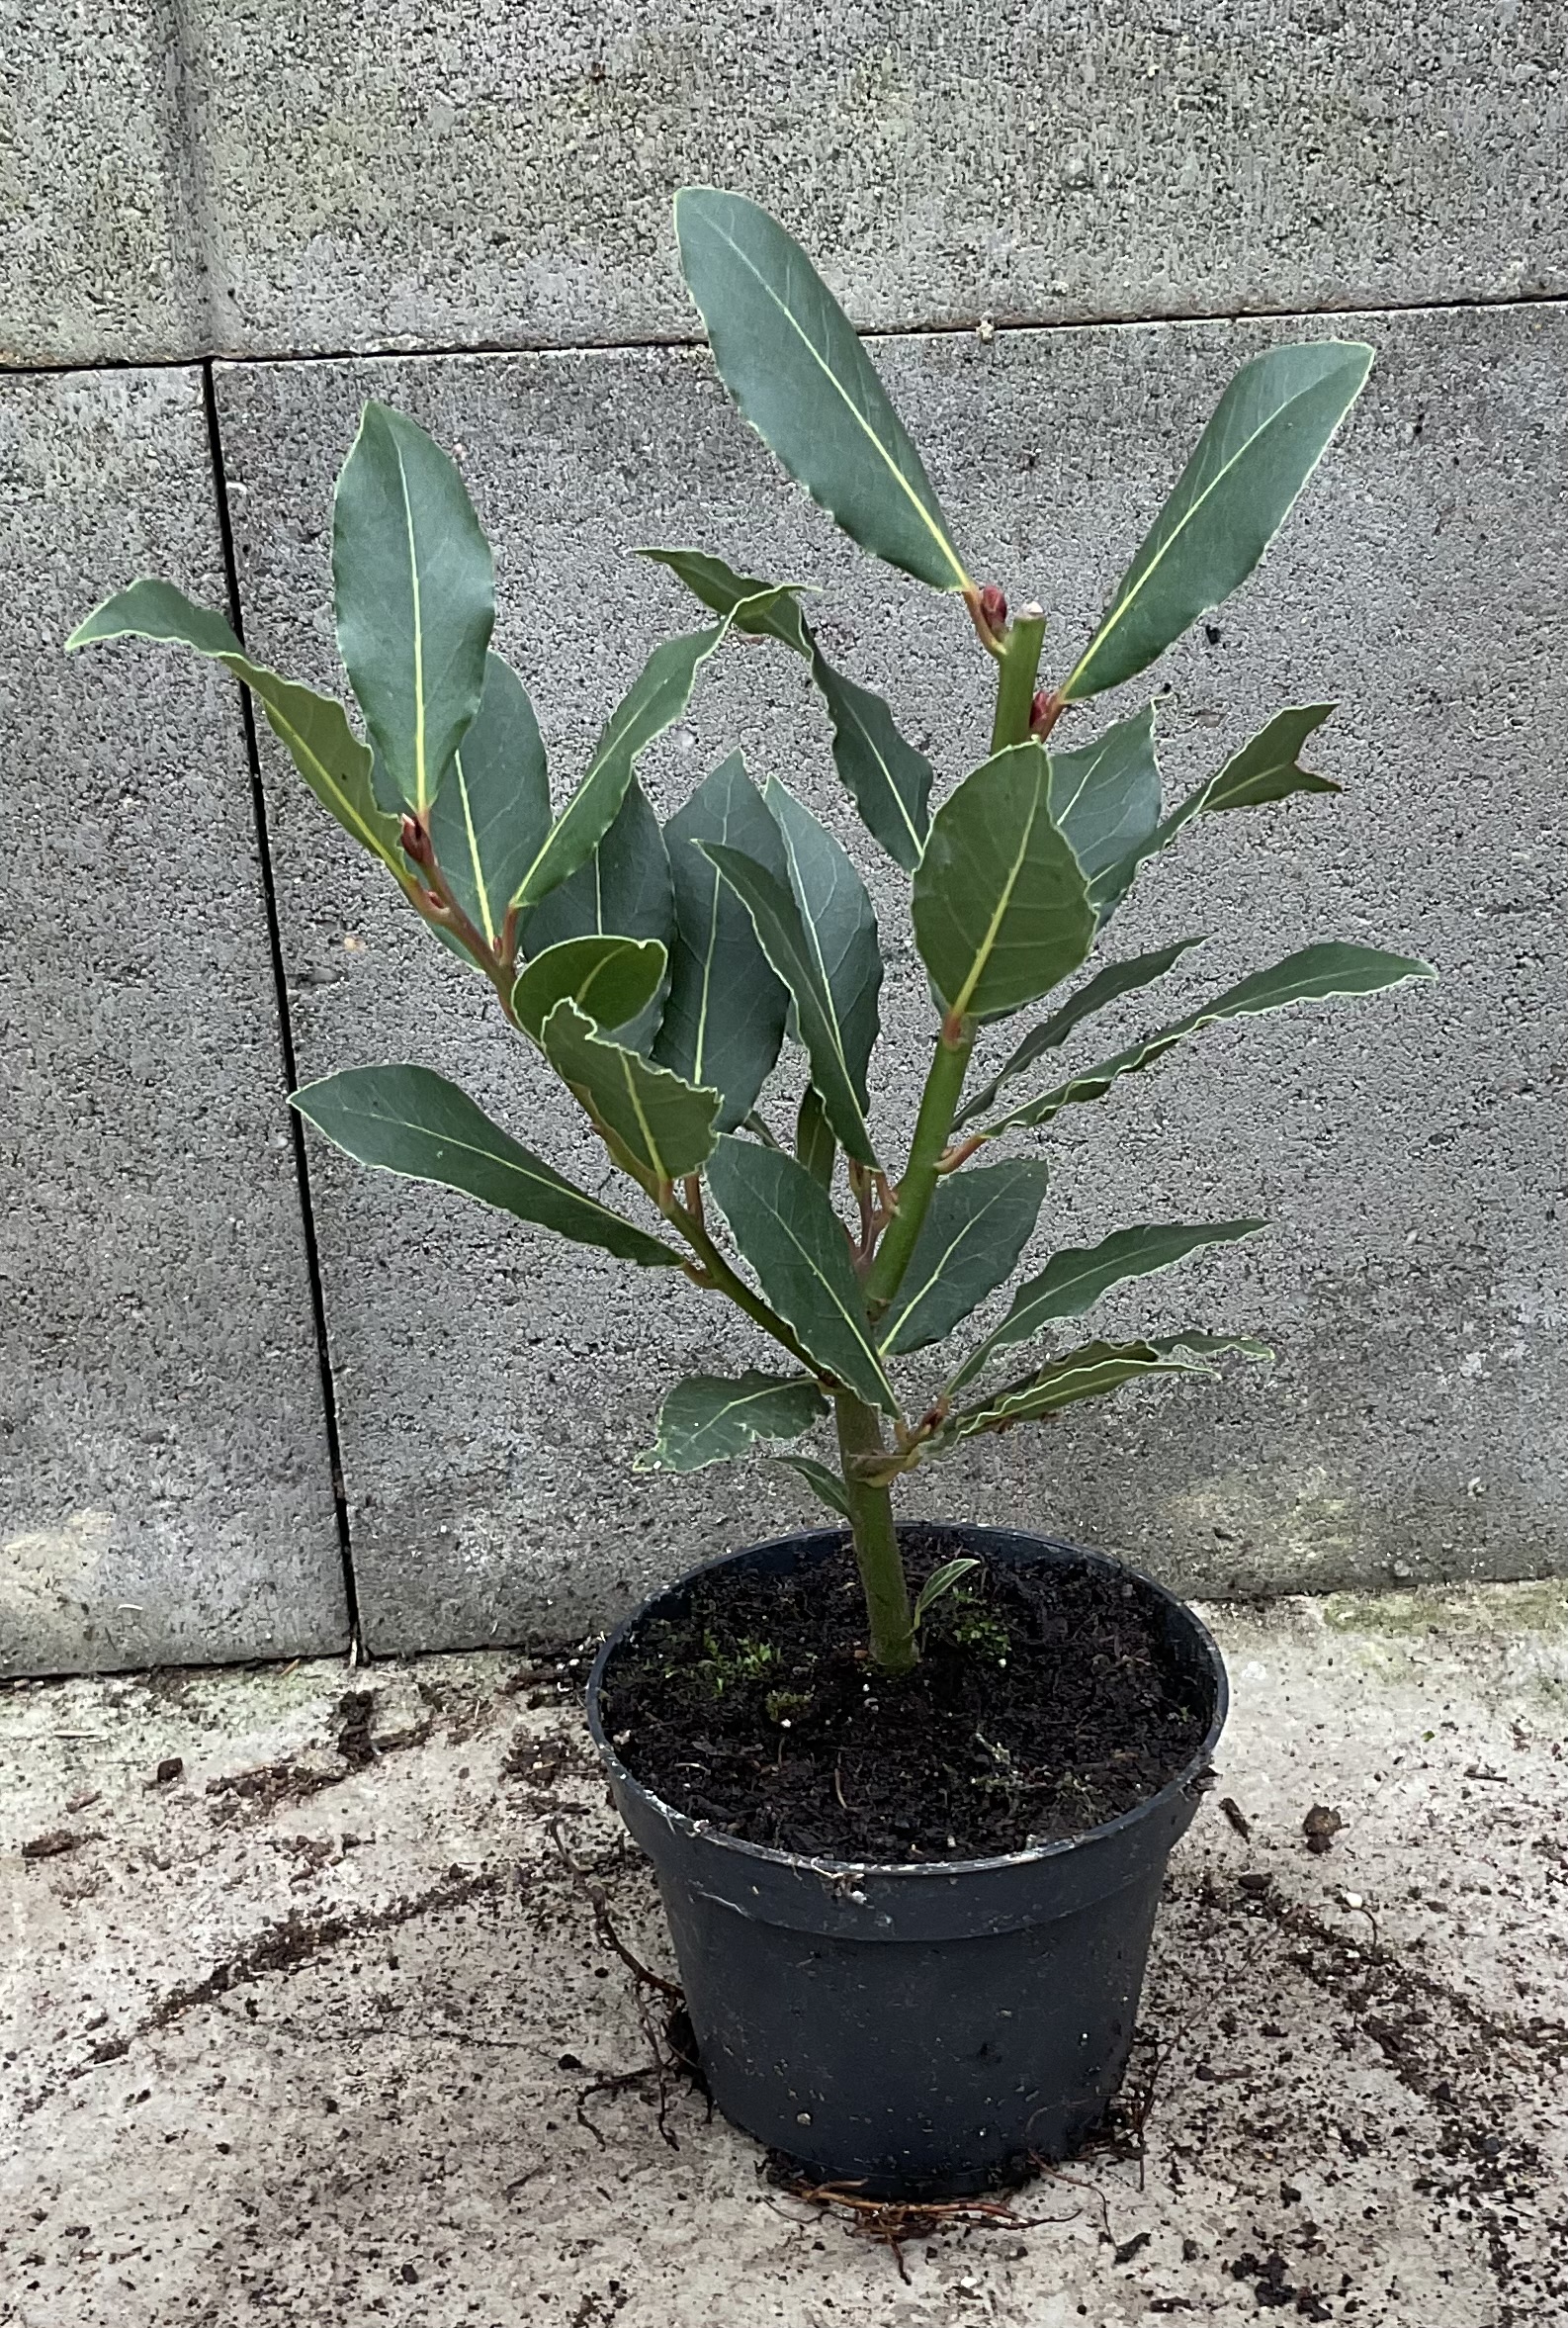 Vavřín (bobkový list) cca 15 cm